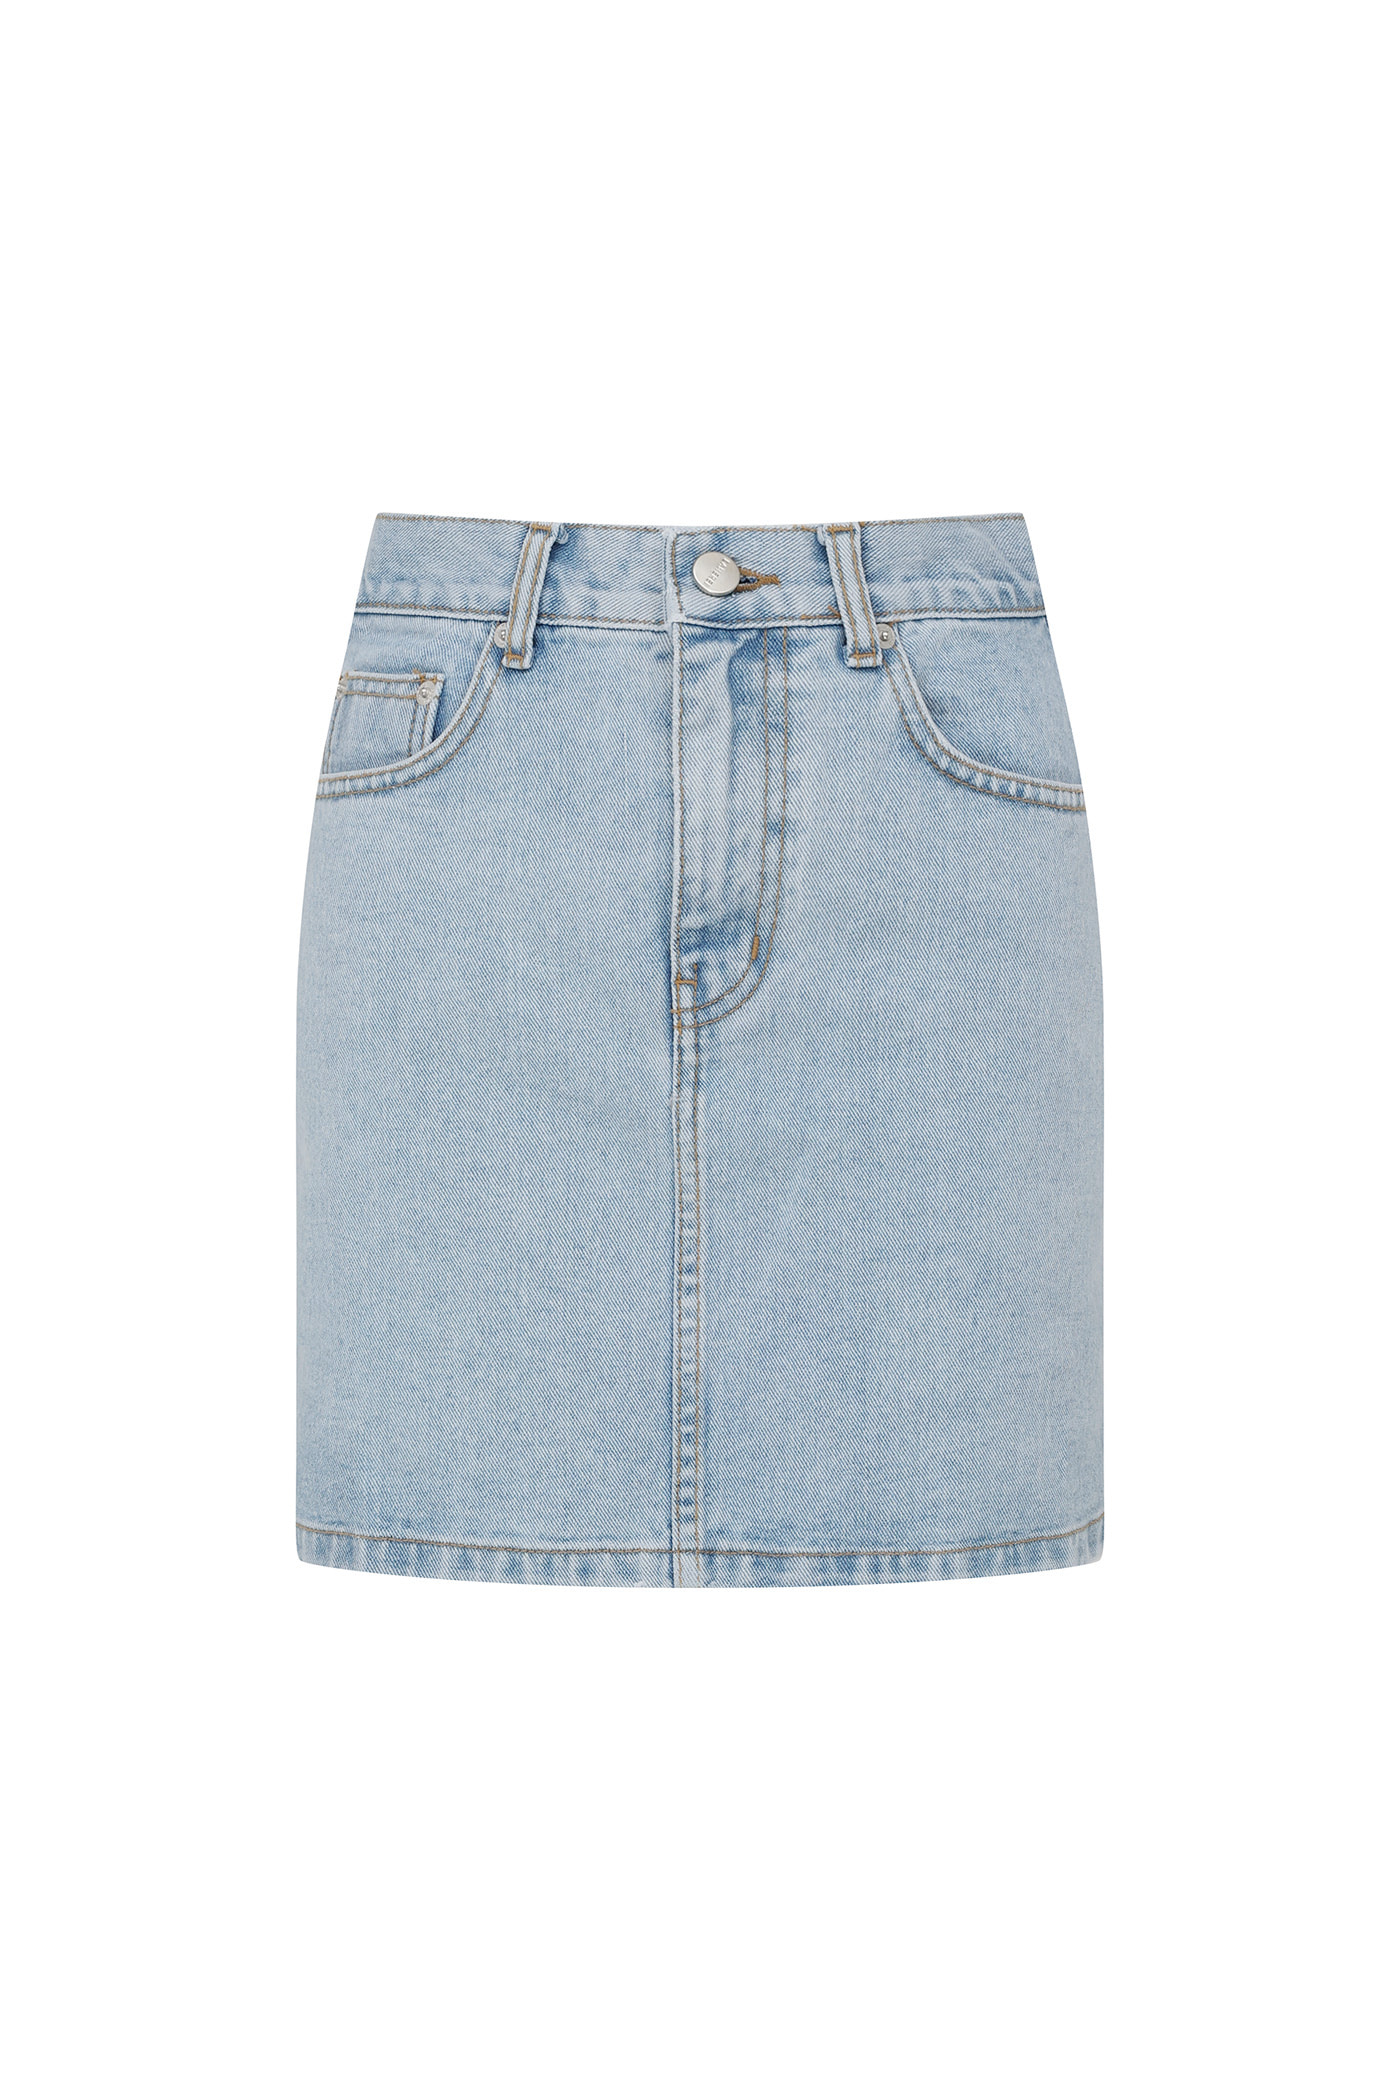 [SAMPLE]Mini Denim Skirt